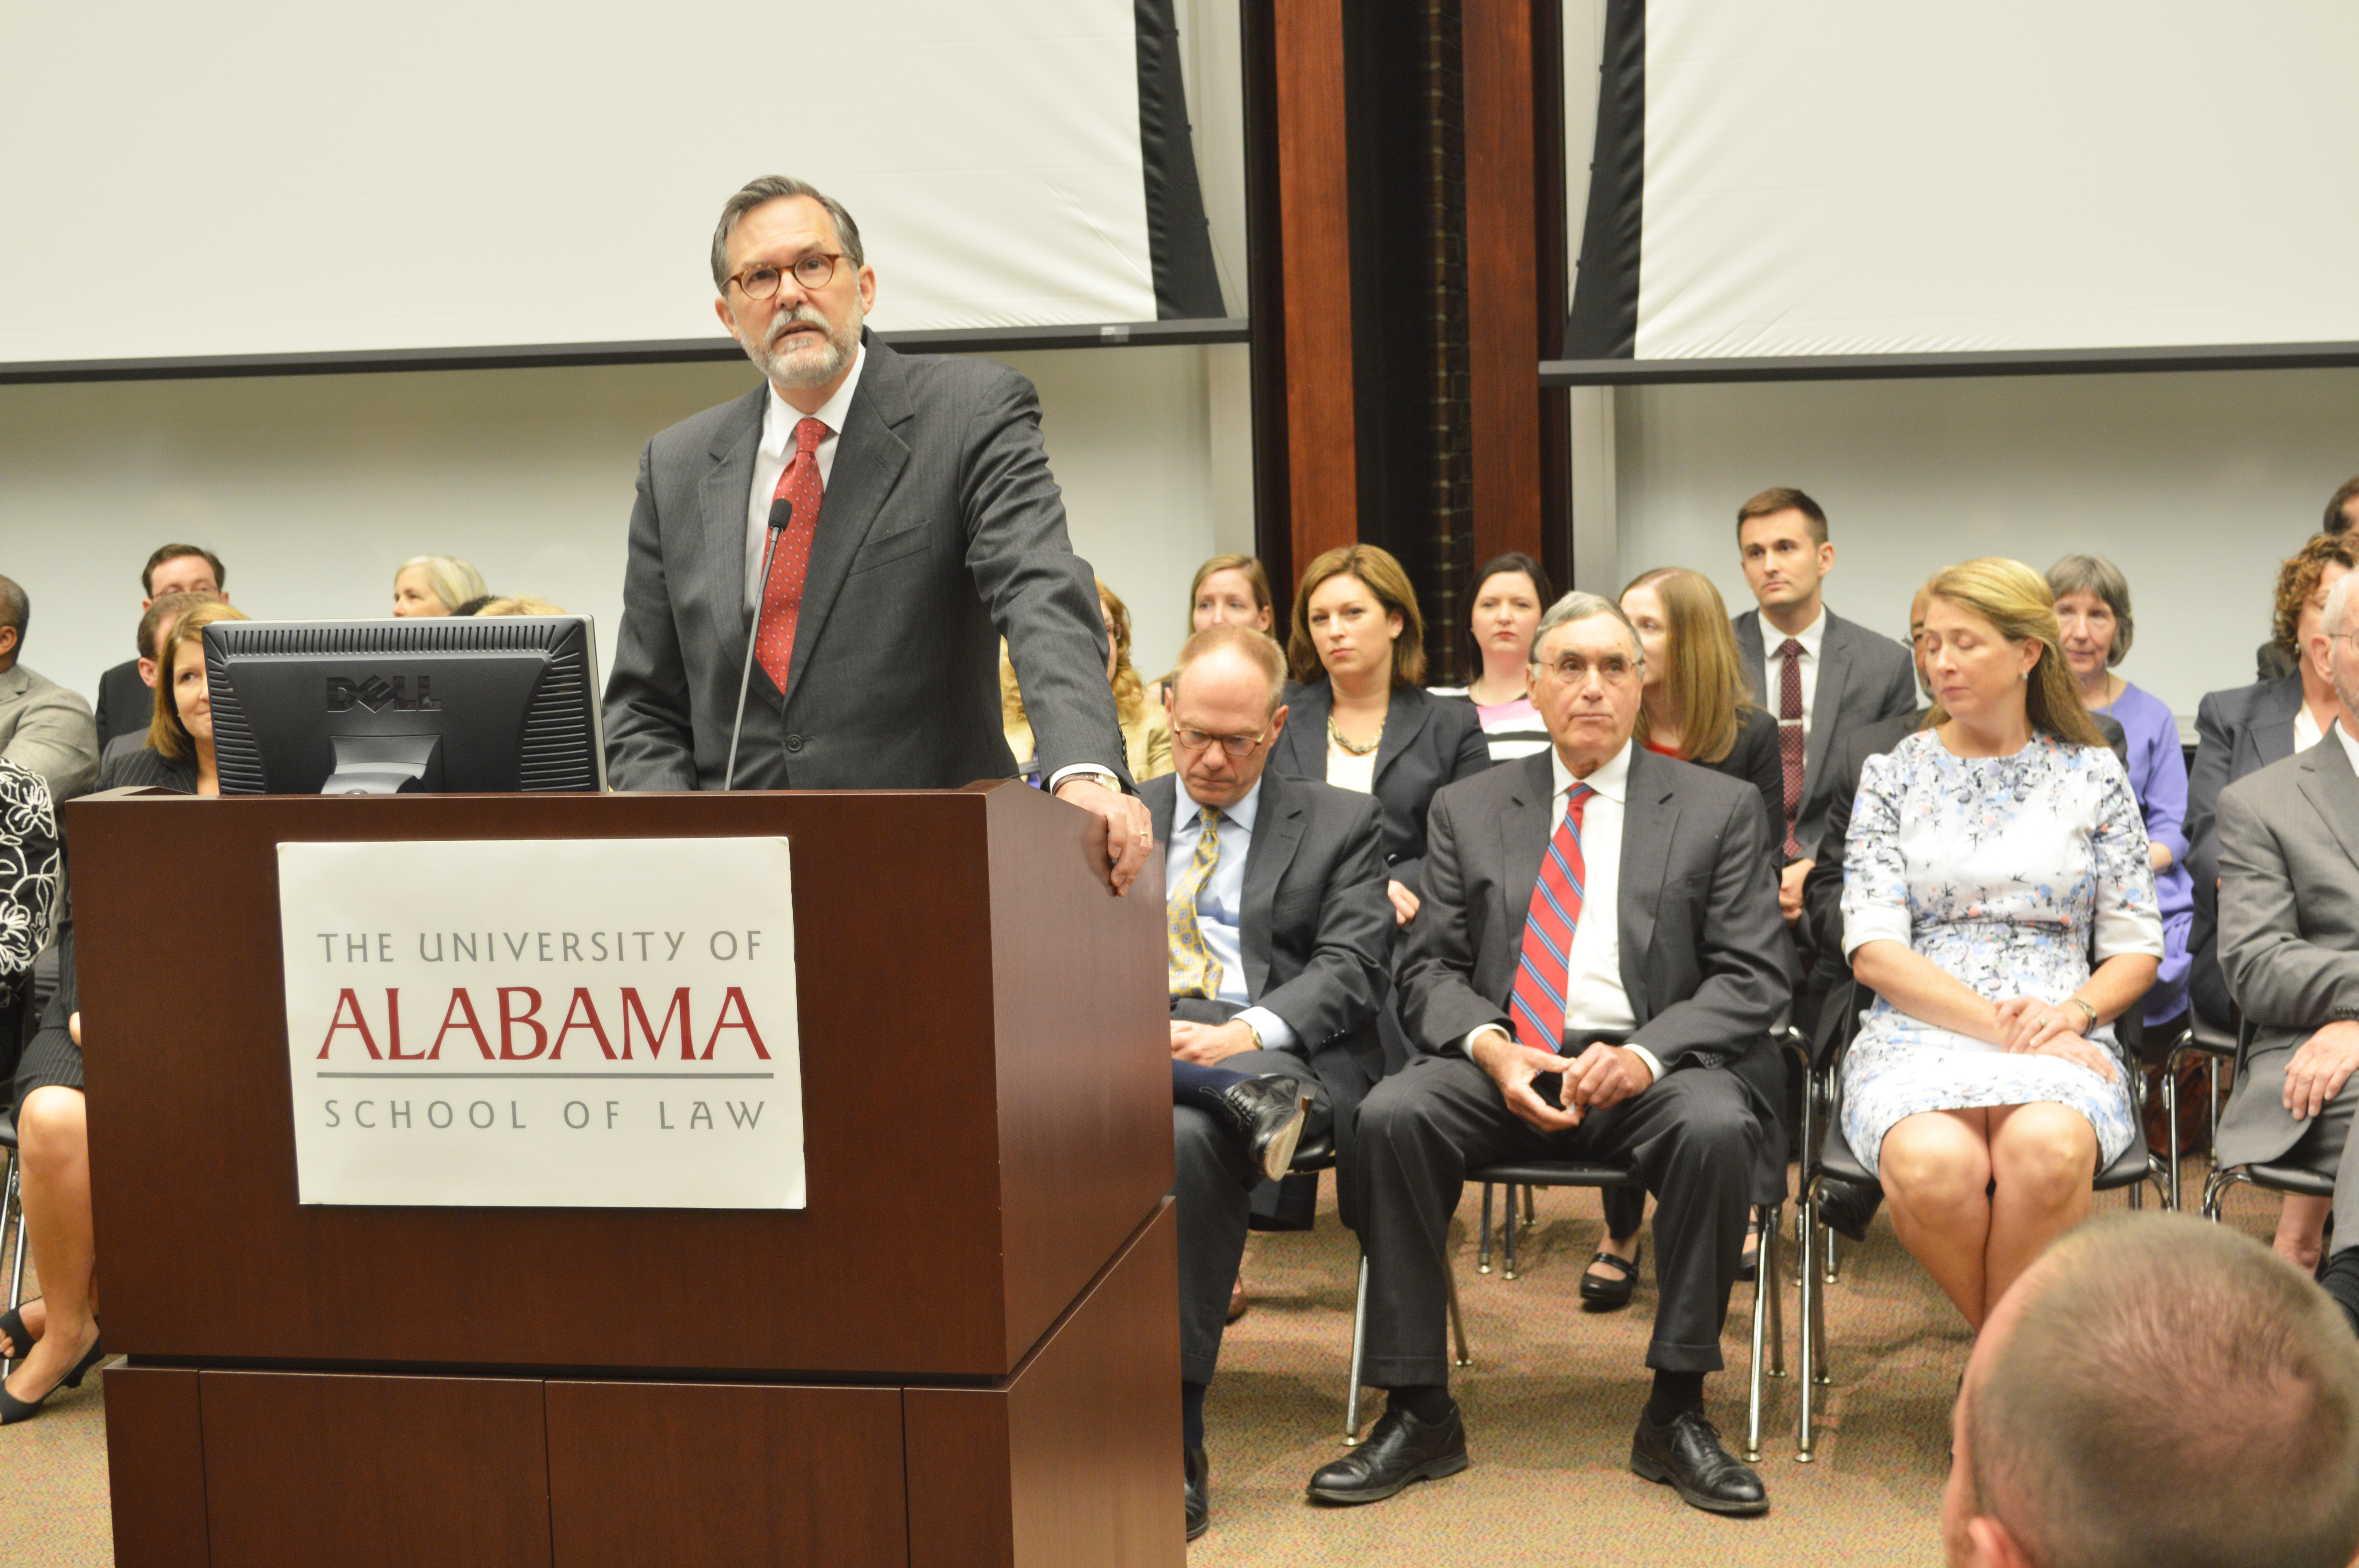 Alabama Tax Llm Program